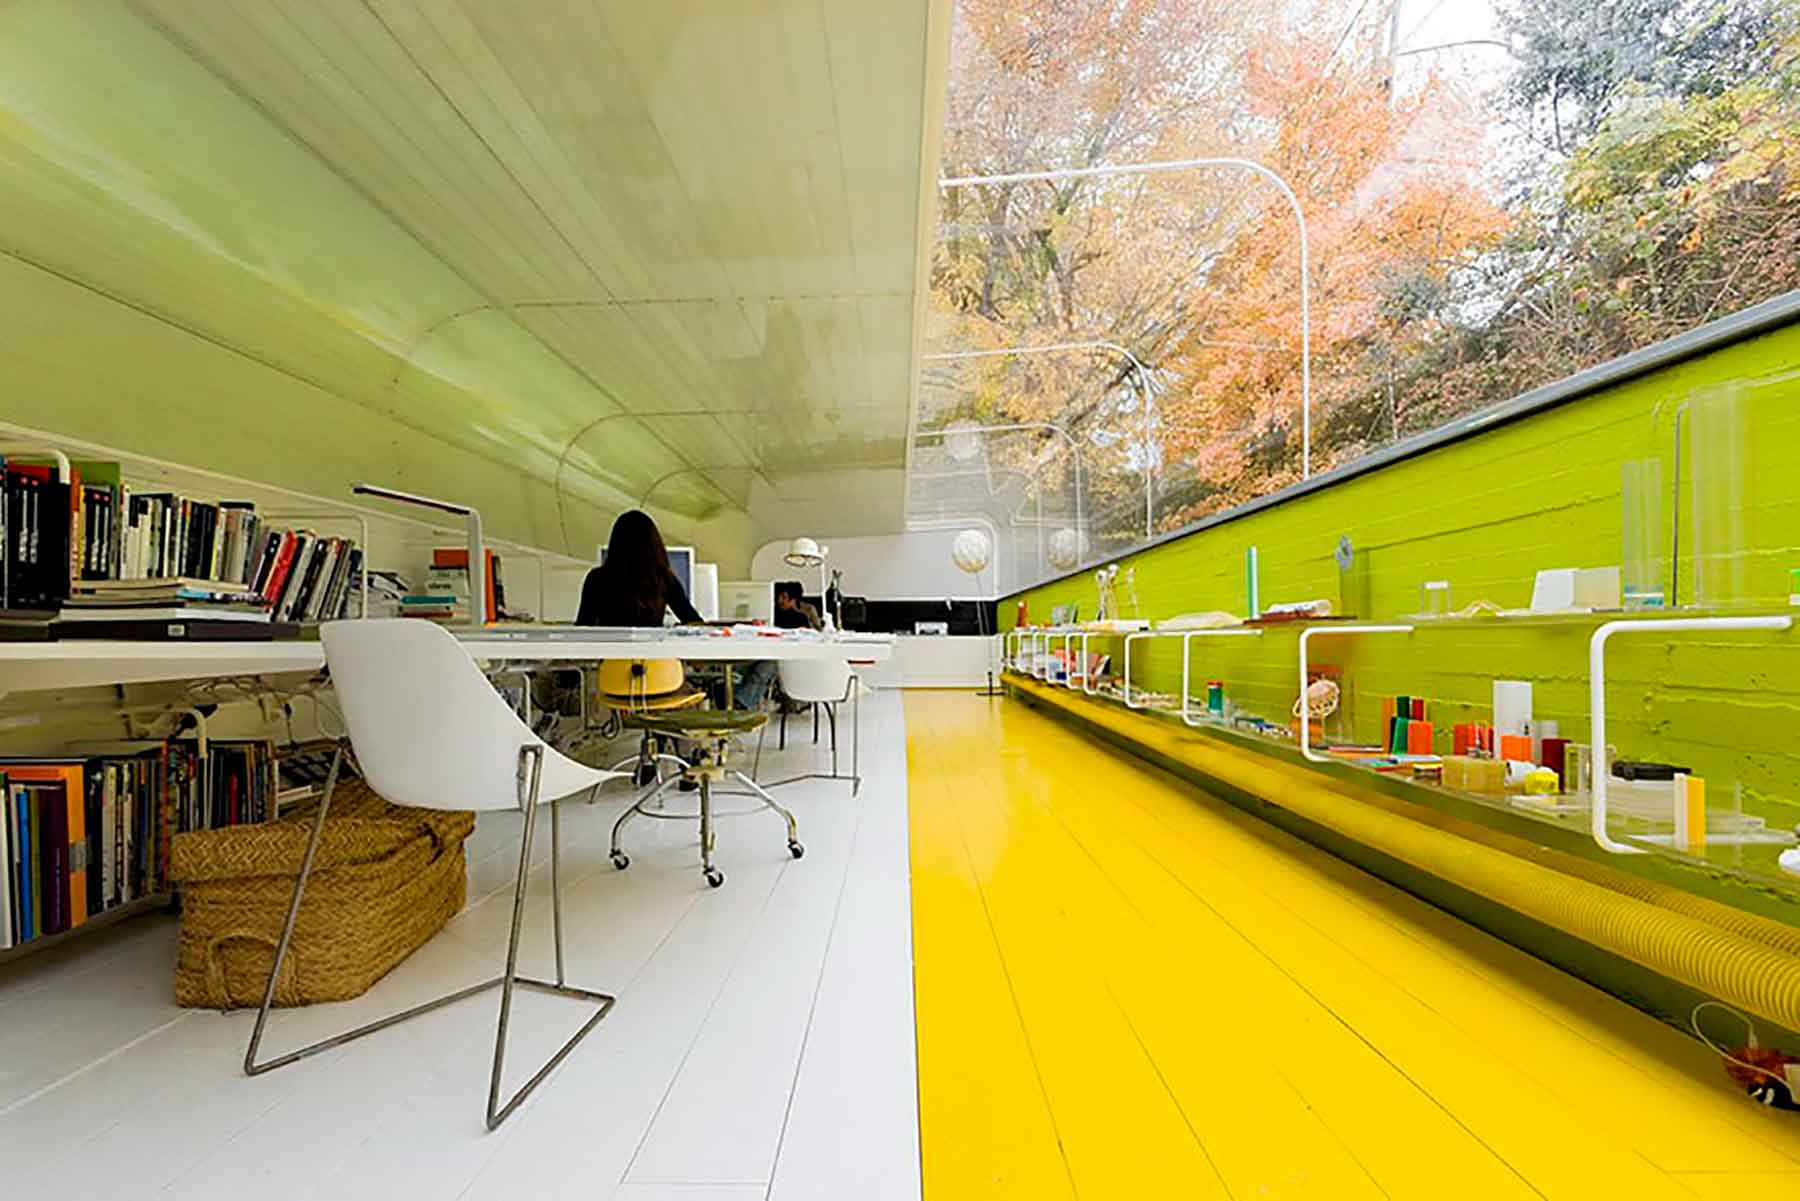 Oficinas en color verde y amarillo